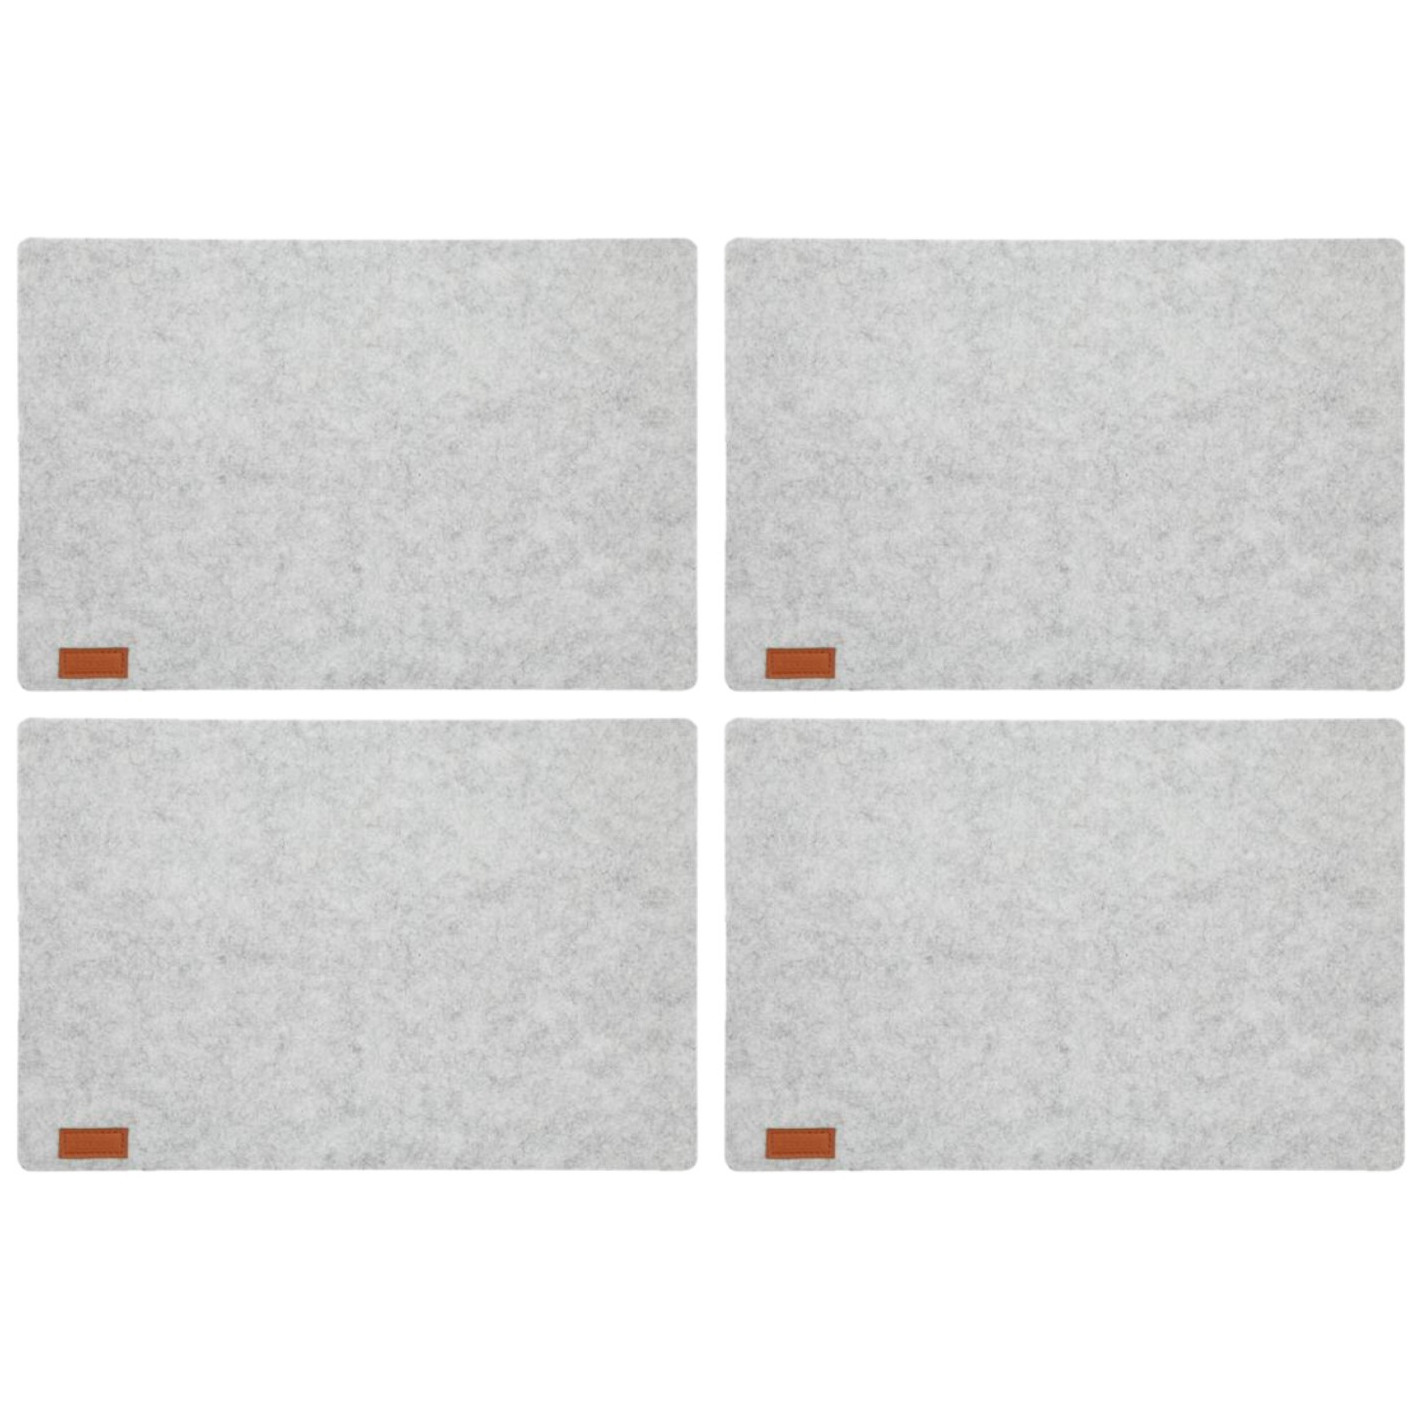 Cepewa 8x stuks rechthoekige placemats met ronde hoeken polyester licht grijs 30 x 45 cm -